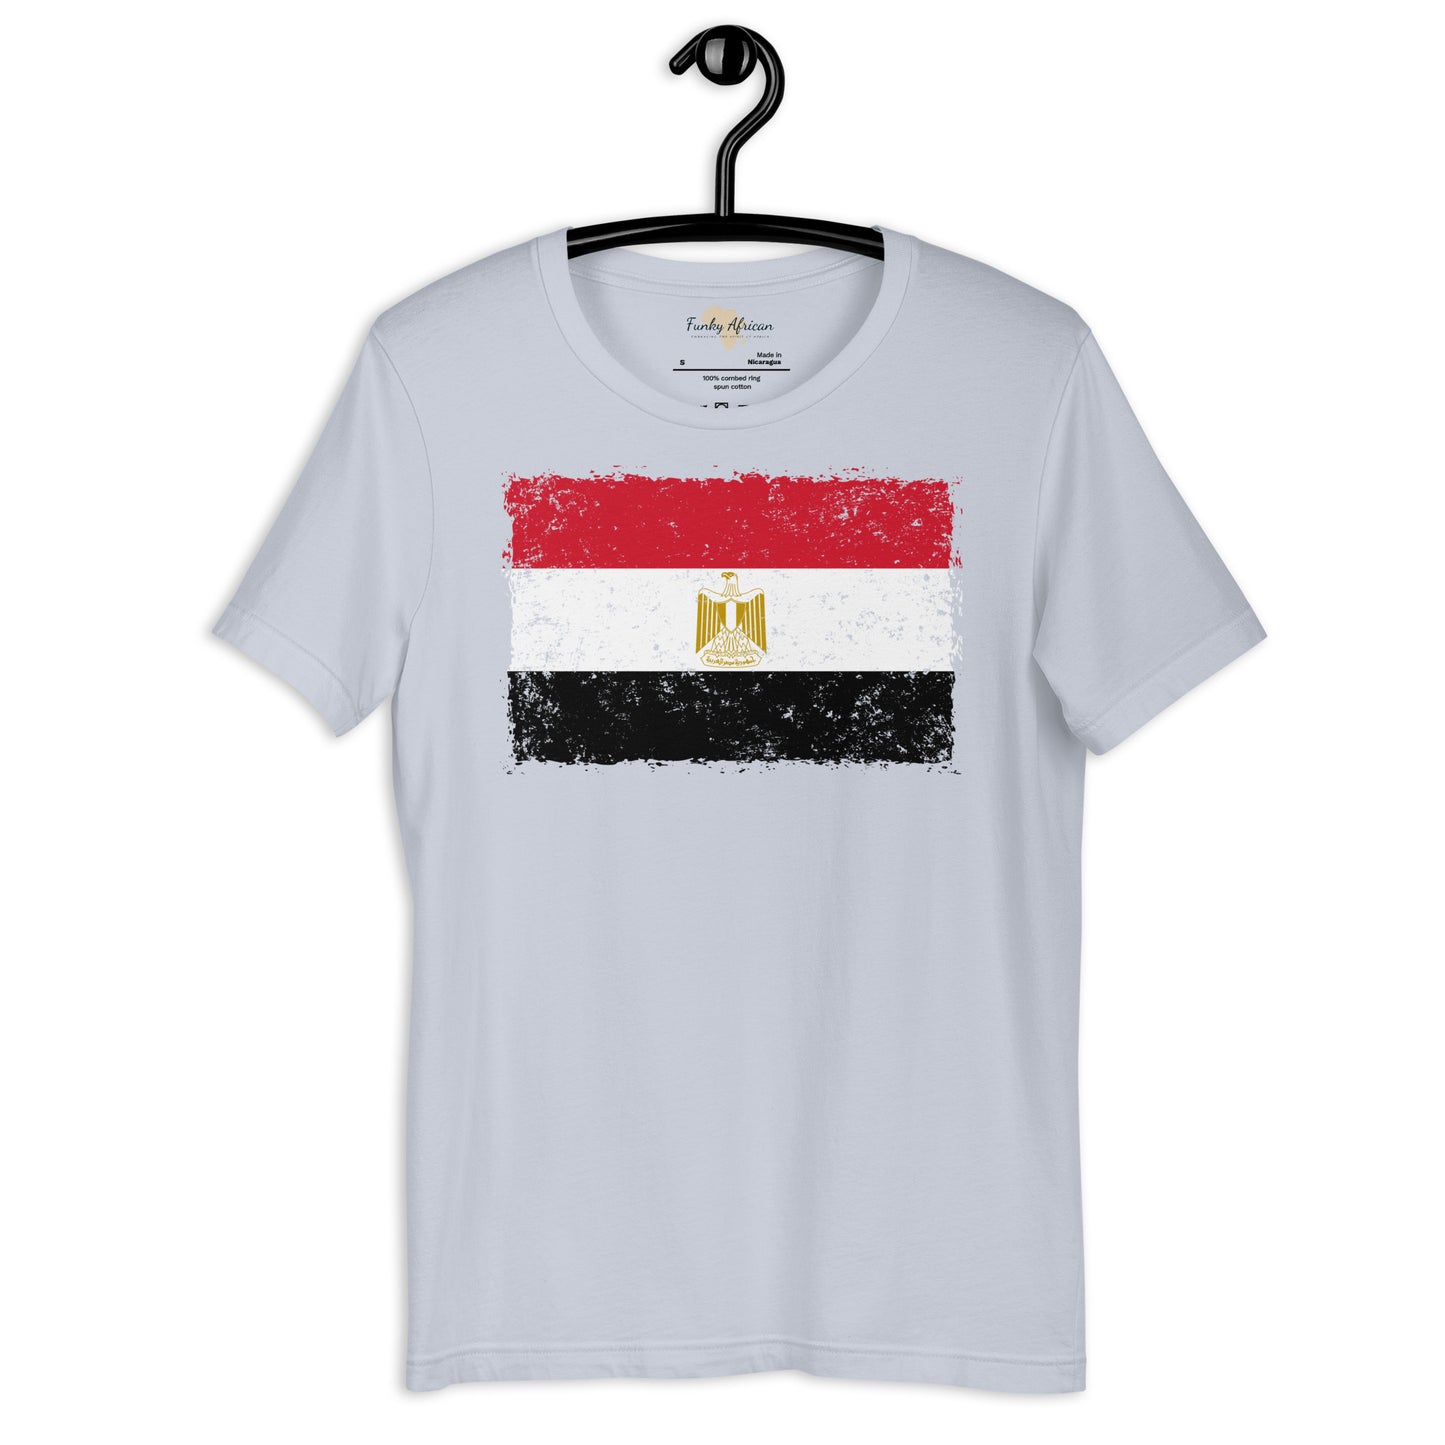 Egypt grunge unisex tee